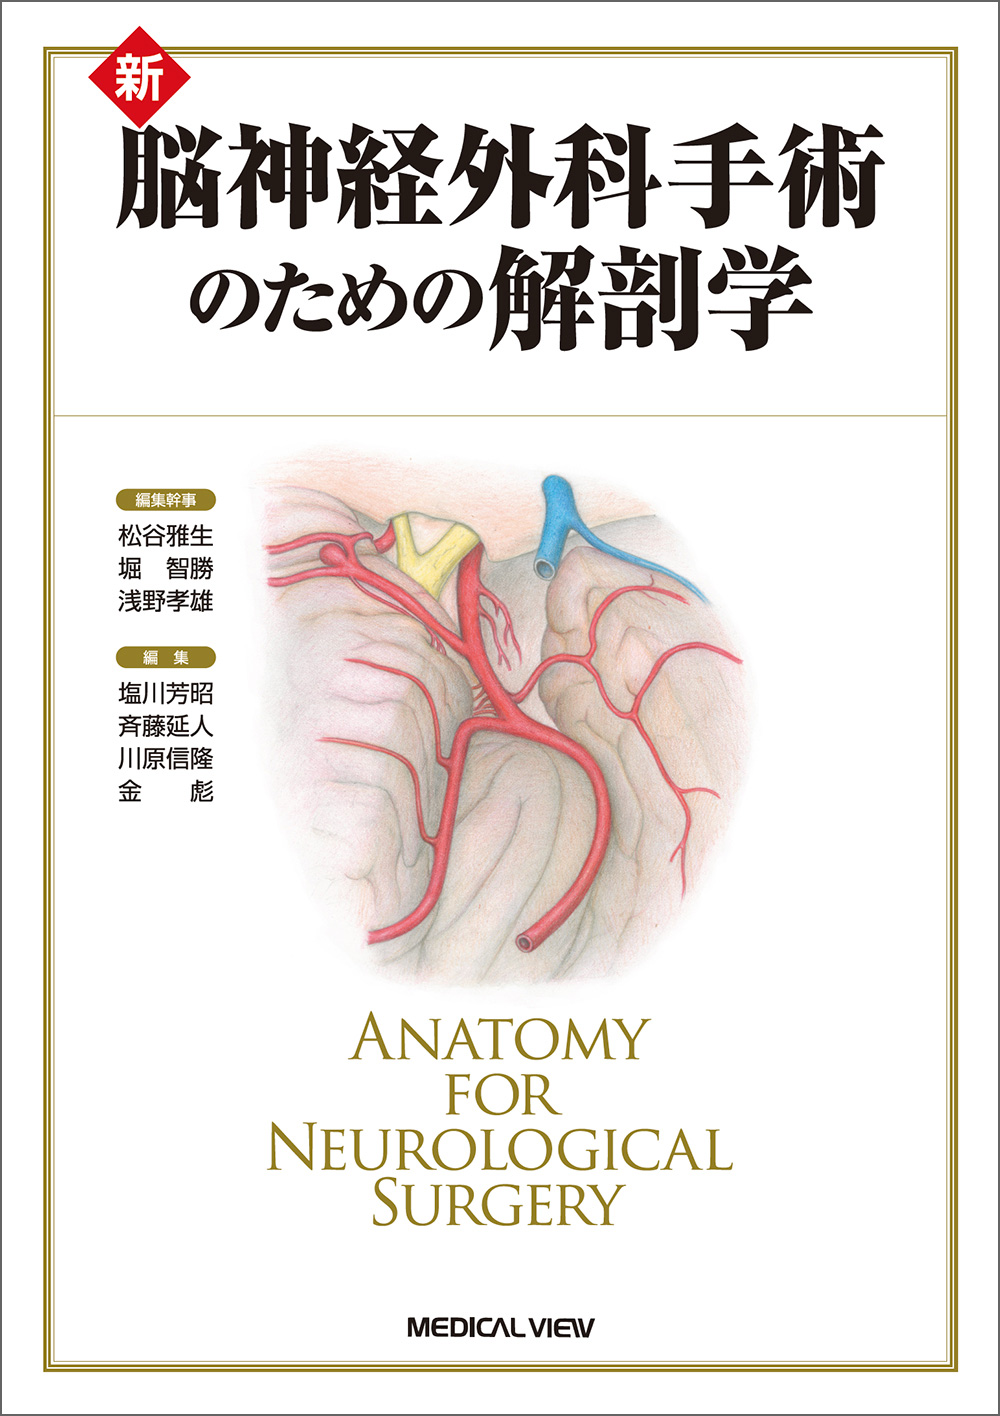 心臓血管外科手術のための解剖学